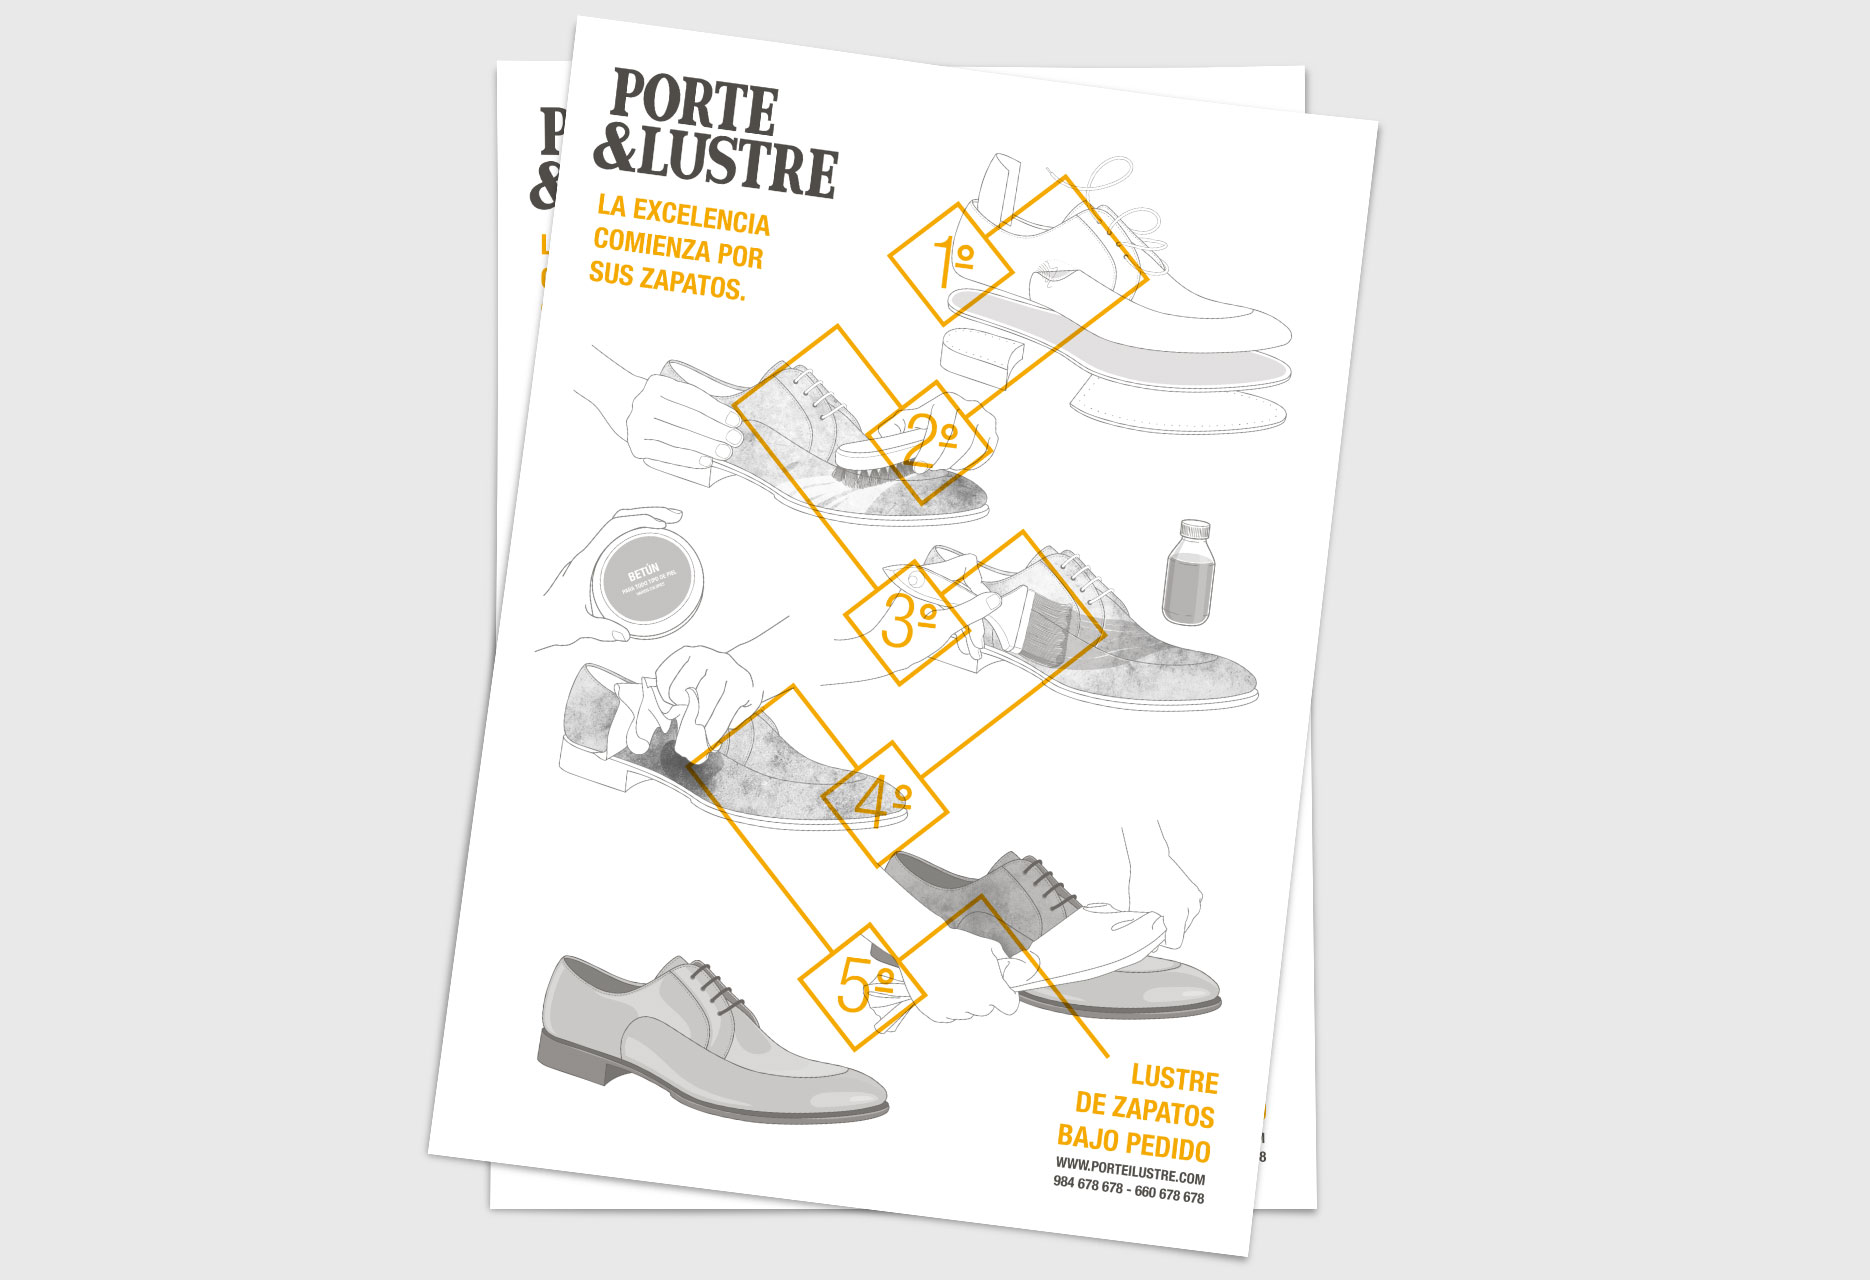 Diseño de marca para limpiabotas PORTE&LUSTRE - diseño web / identidad corporativa / ilustración - 2014